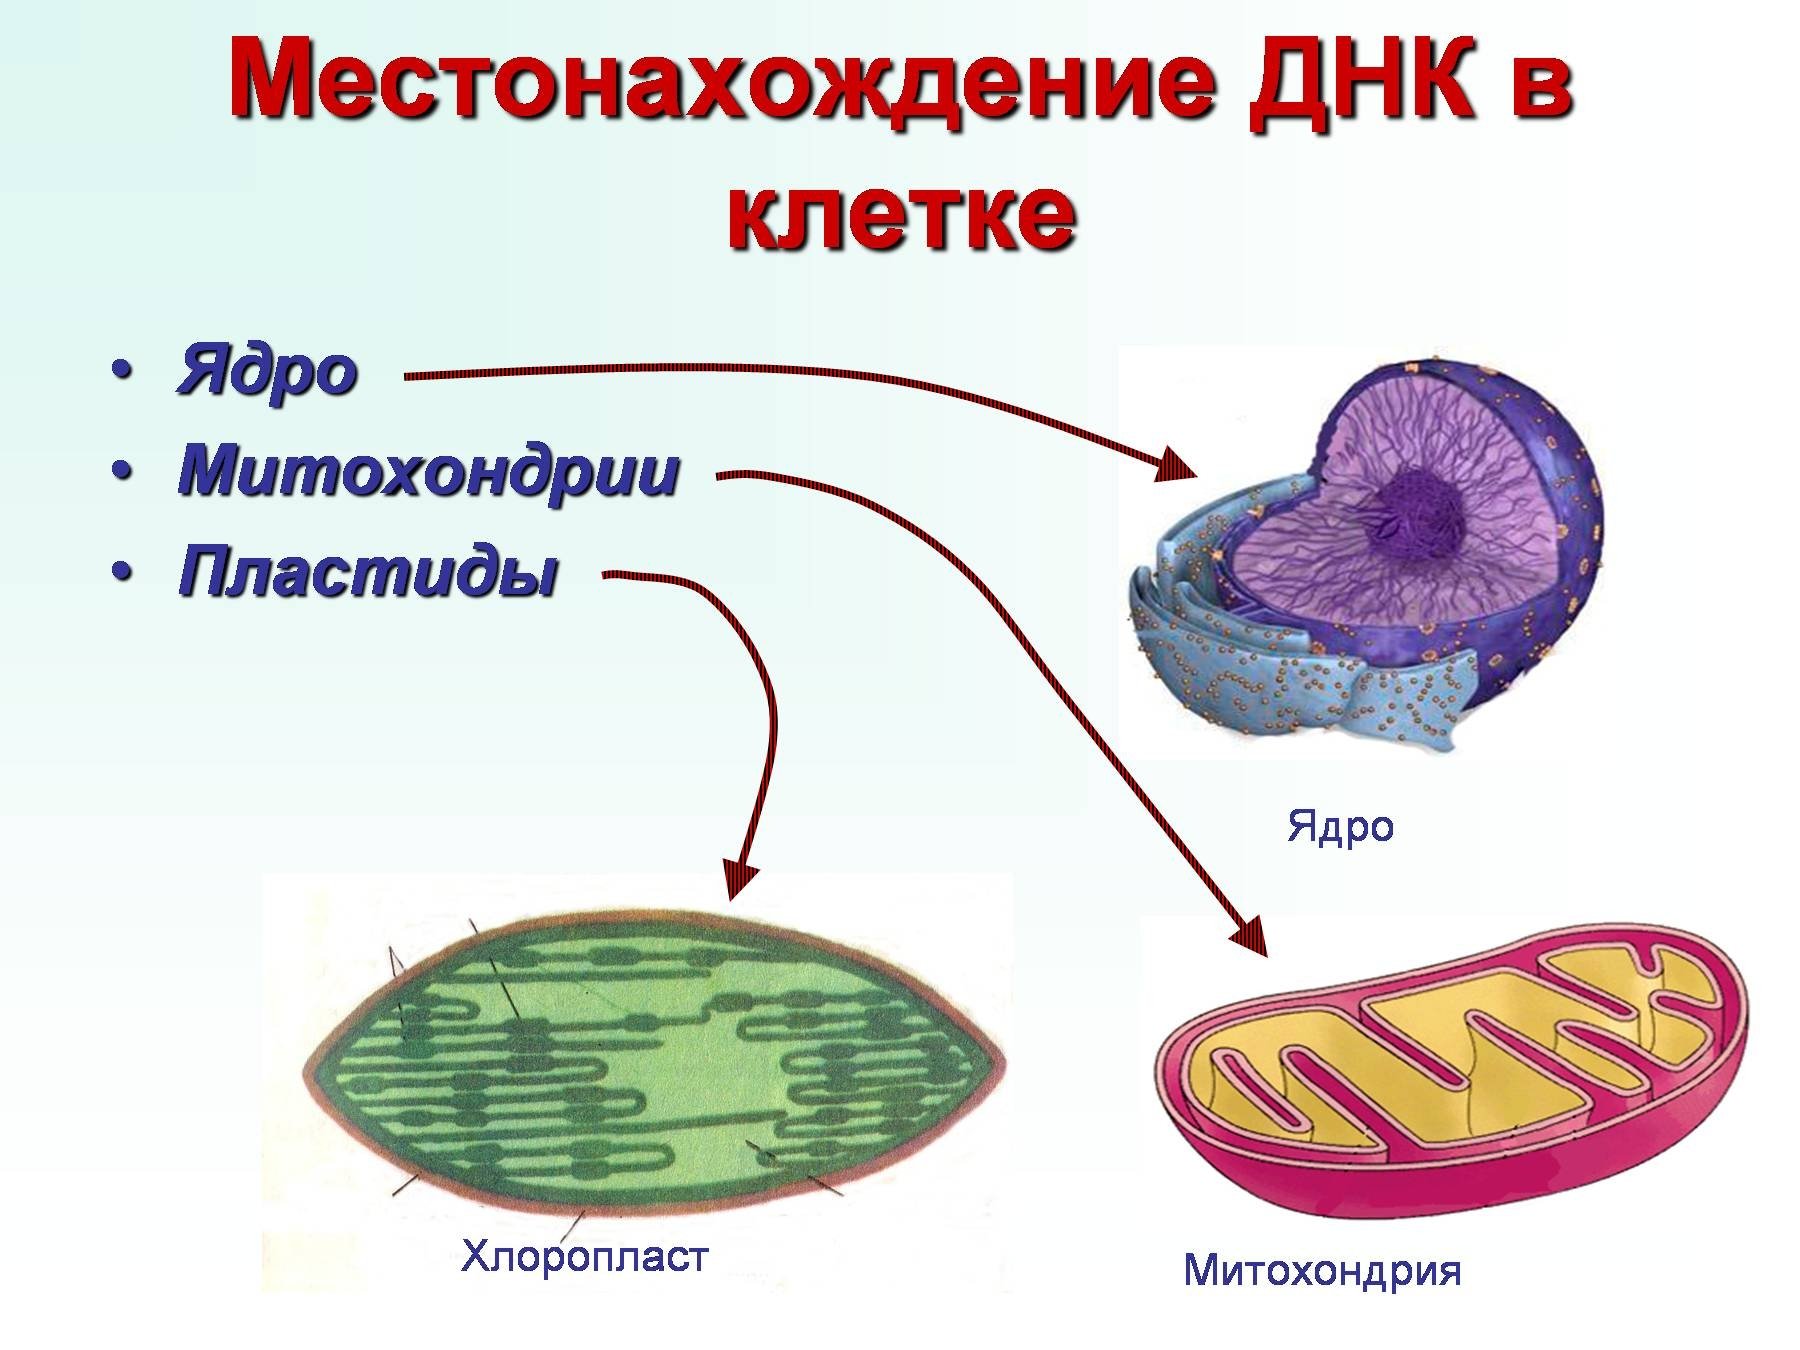 Местоположение клетки. Строение ядра митохондрии. Митохондрии эукариотической клетки. Структура органоидов митохондрия. Ядро митохондрии пластиды.